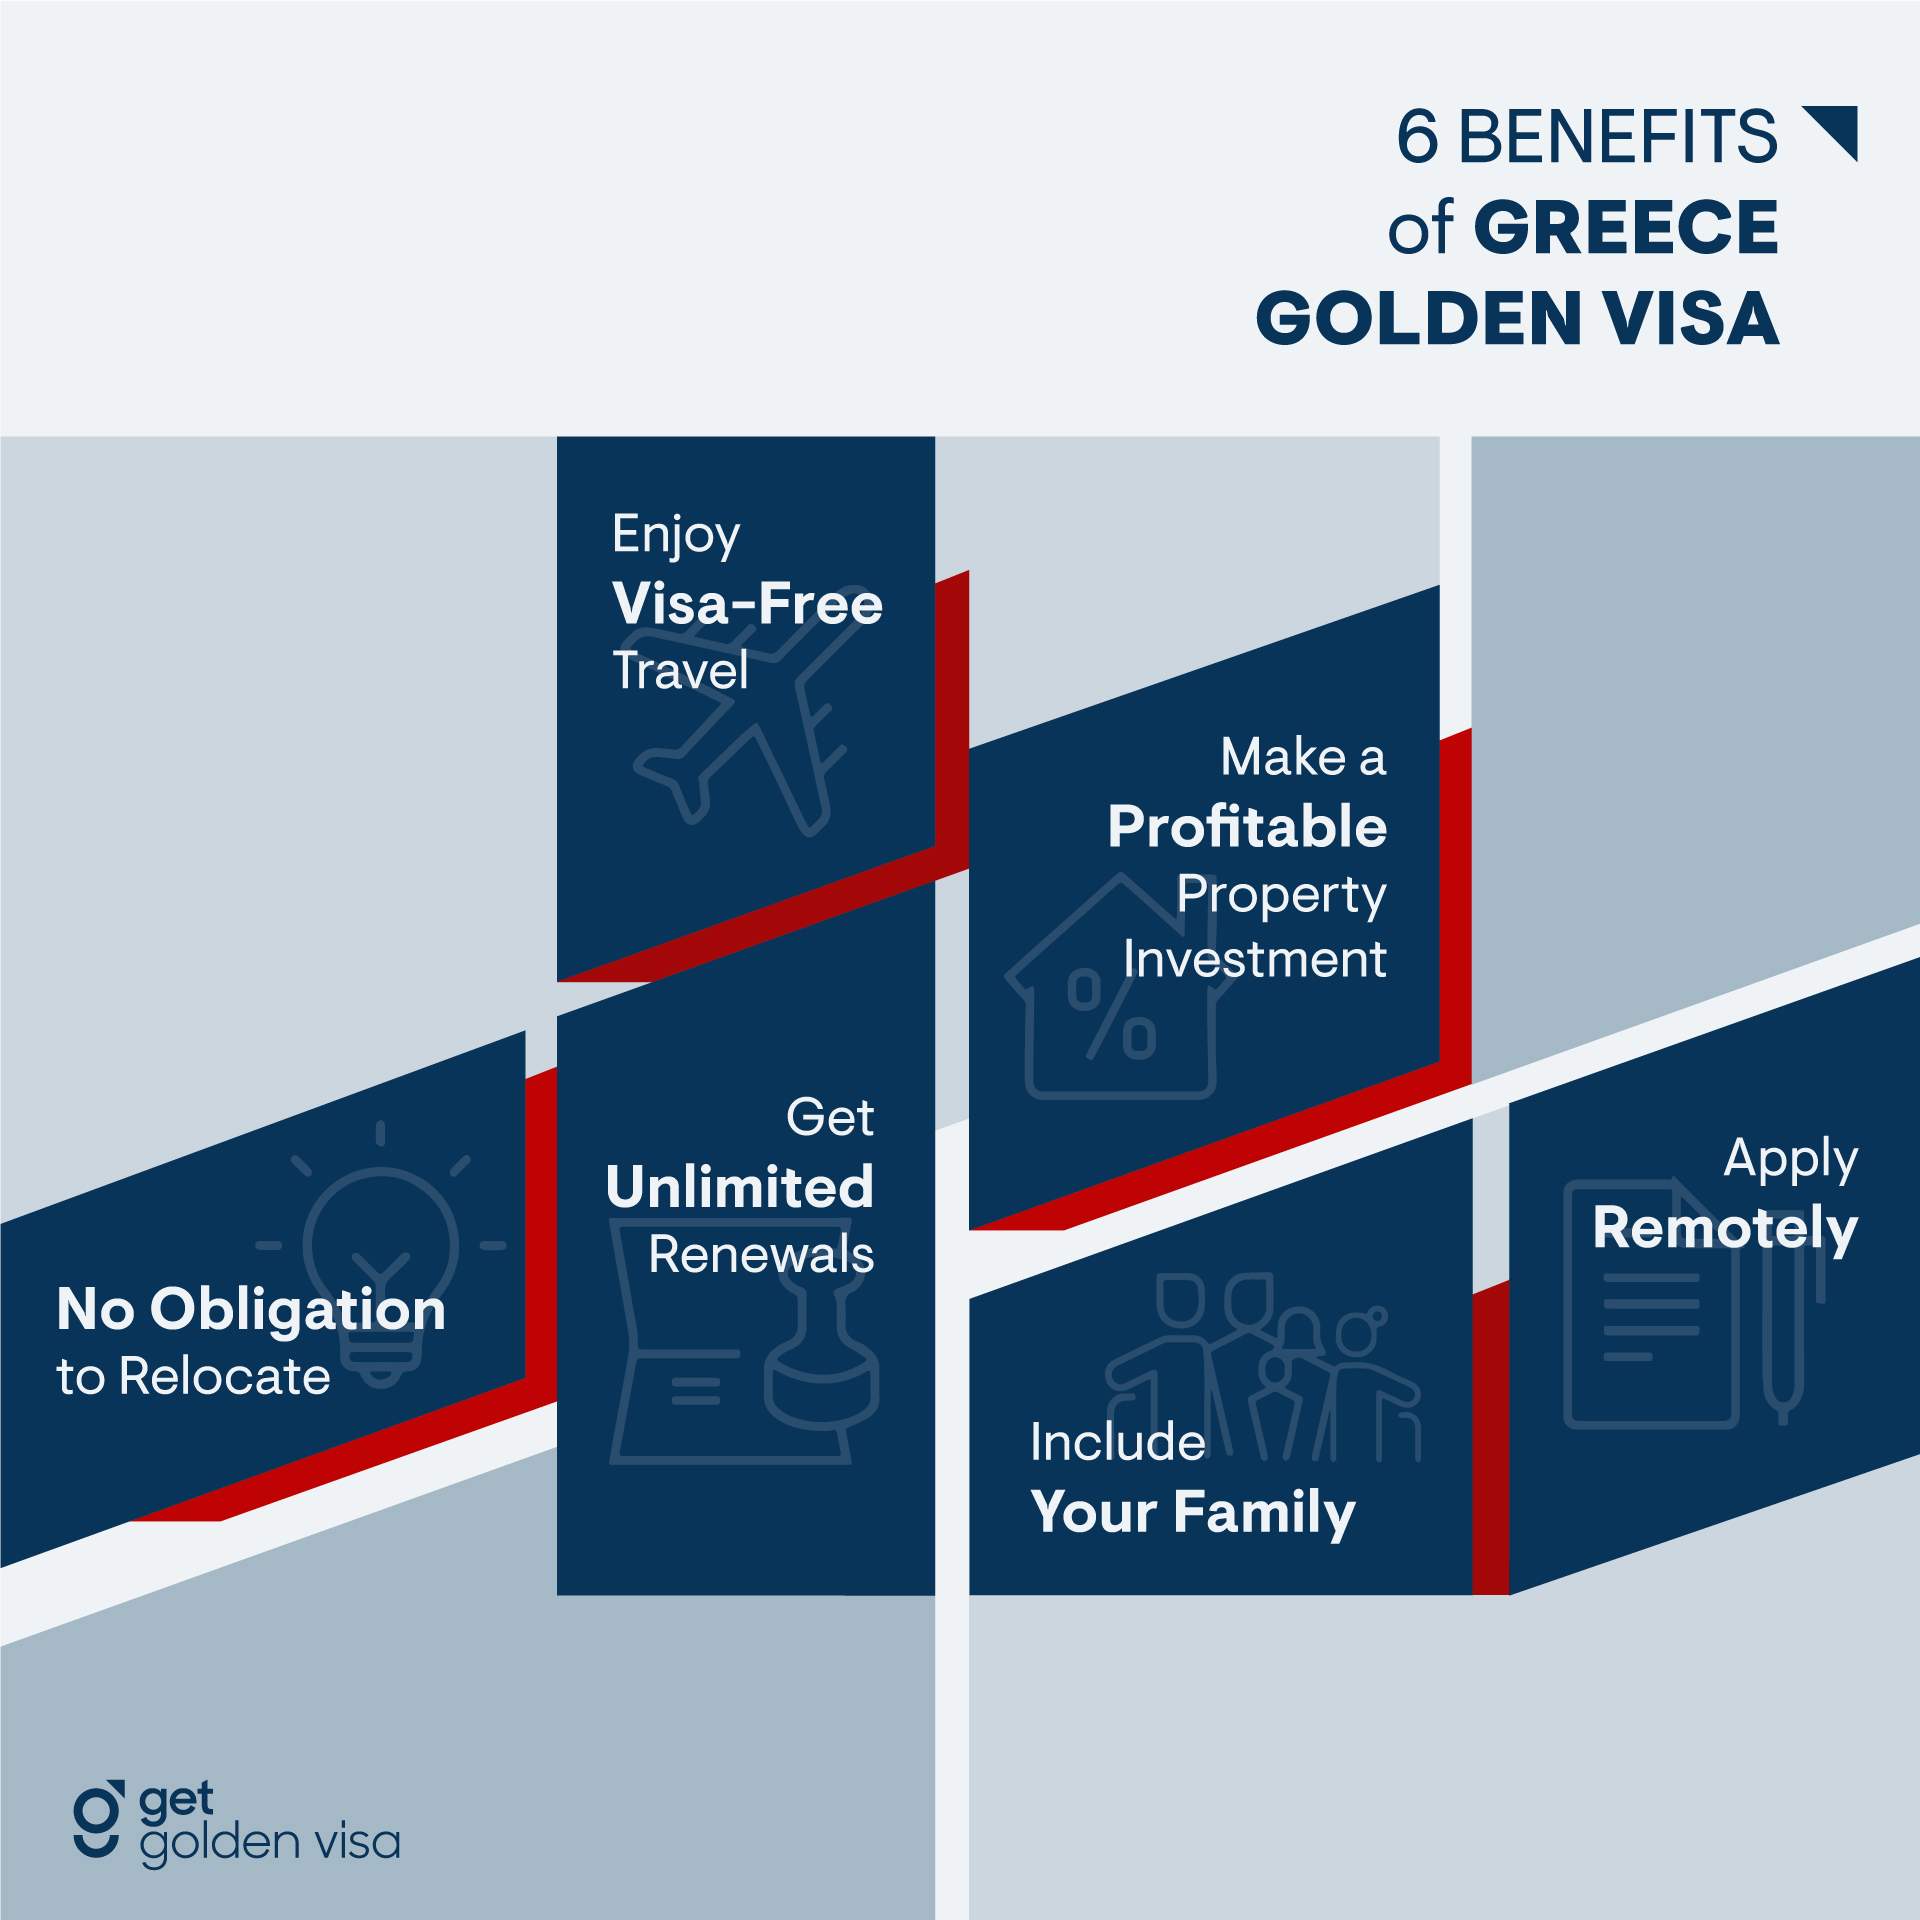 Greece Golden Visa Benefits